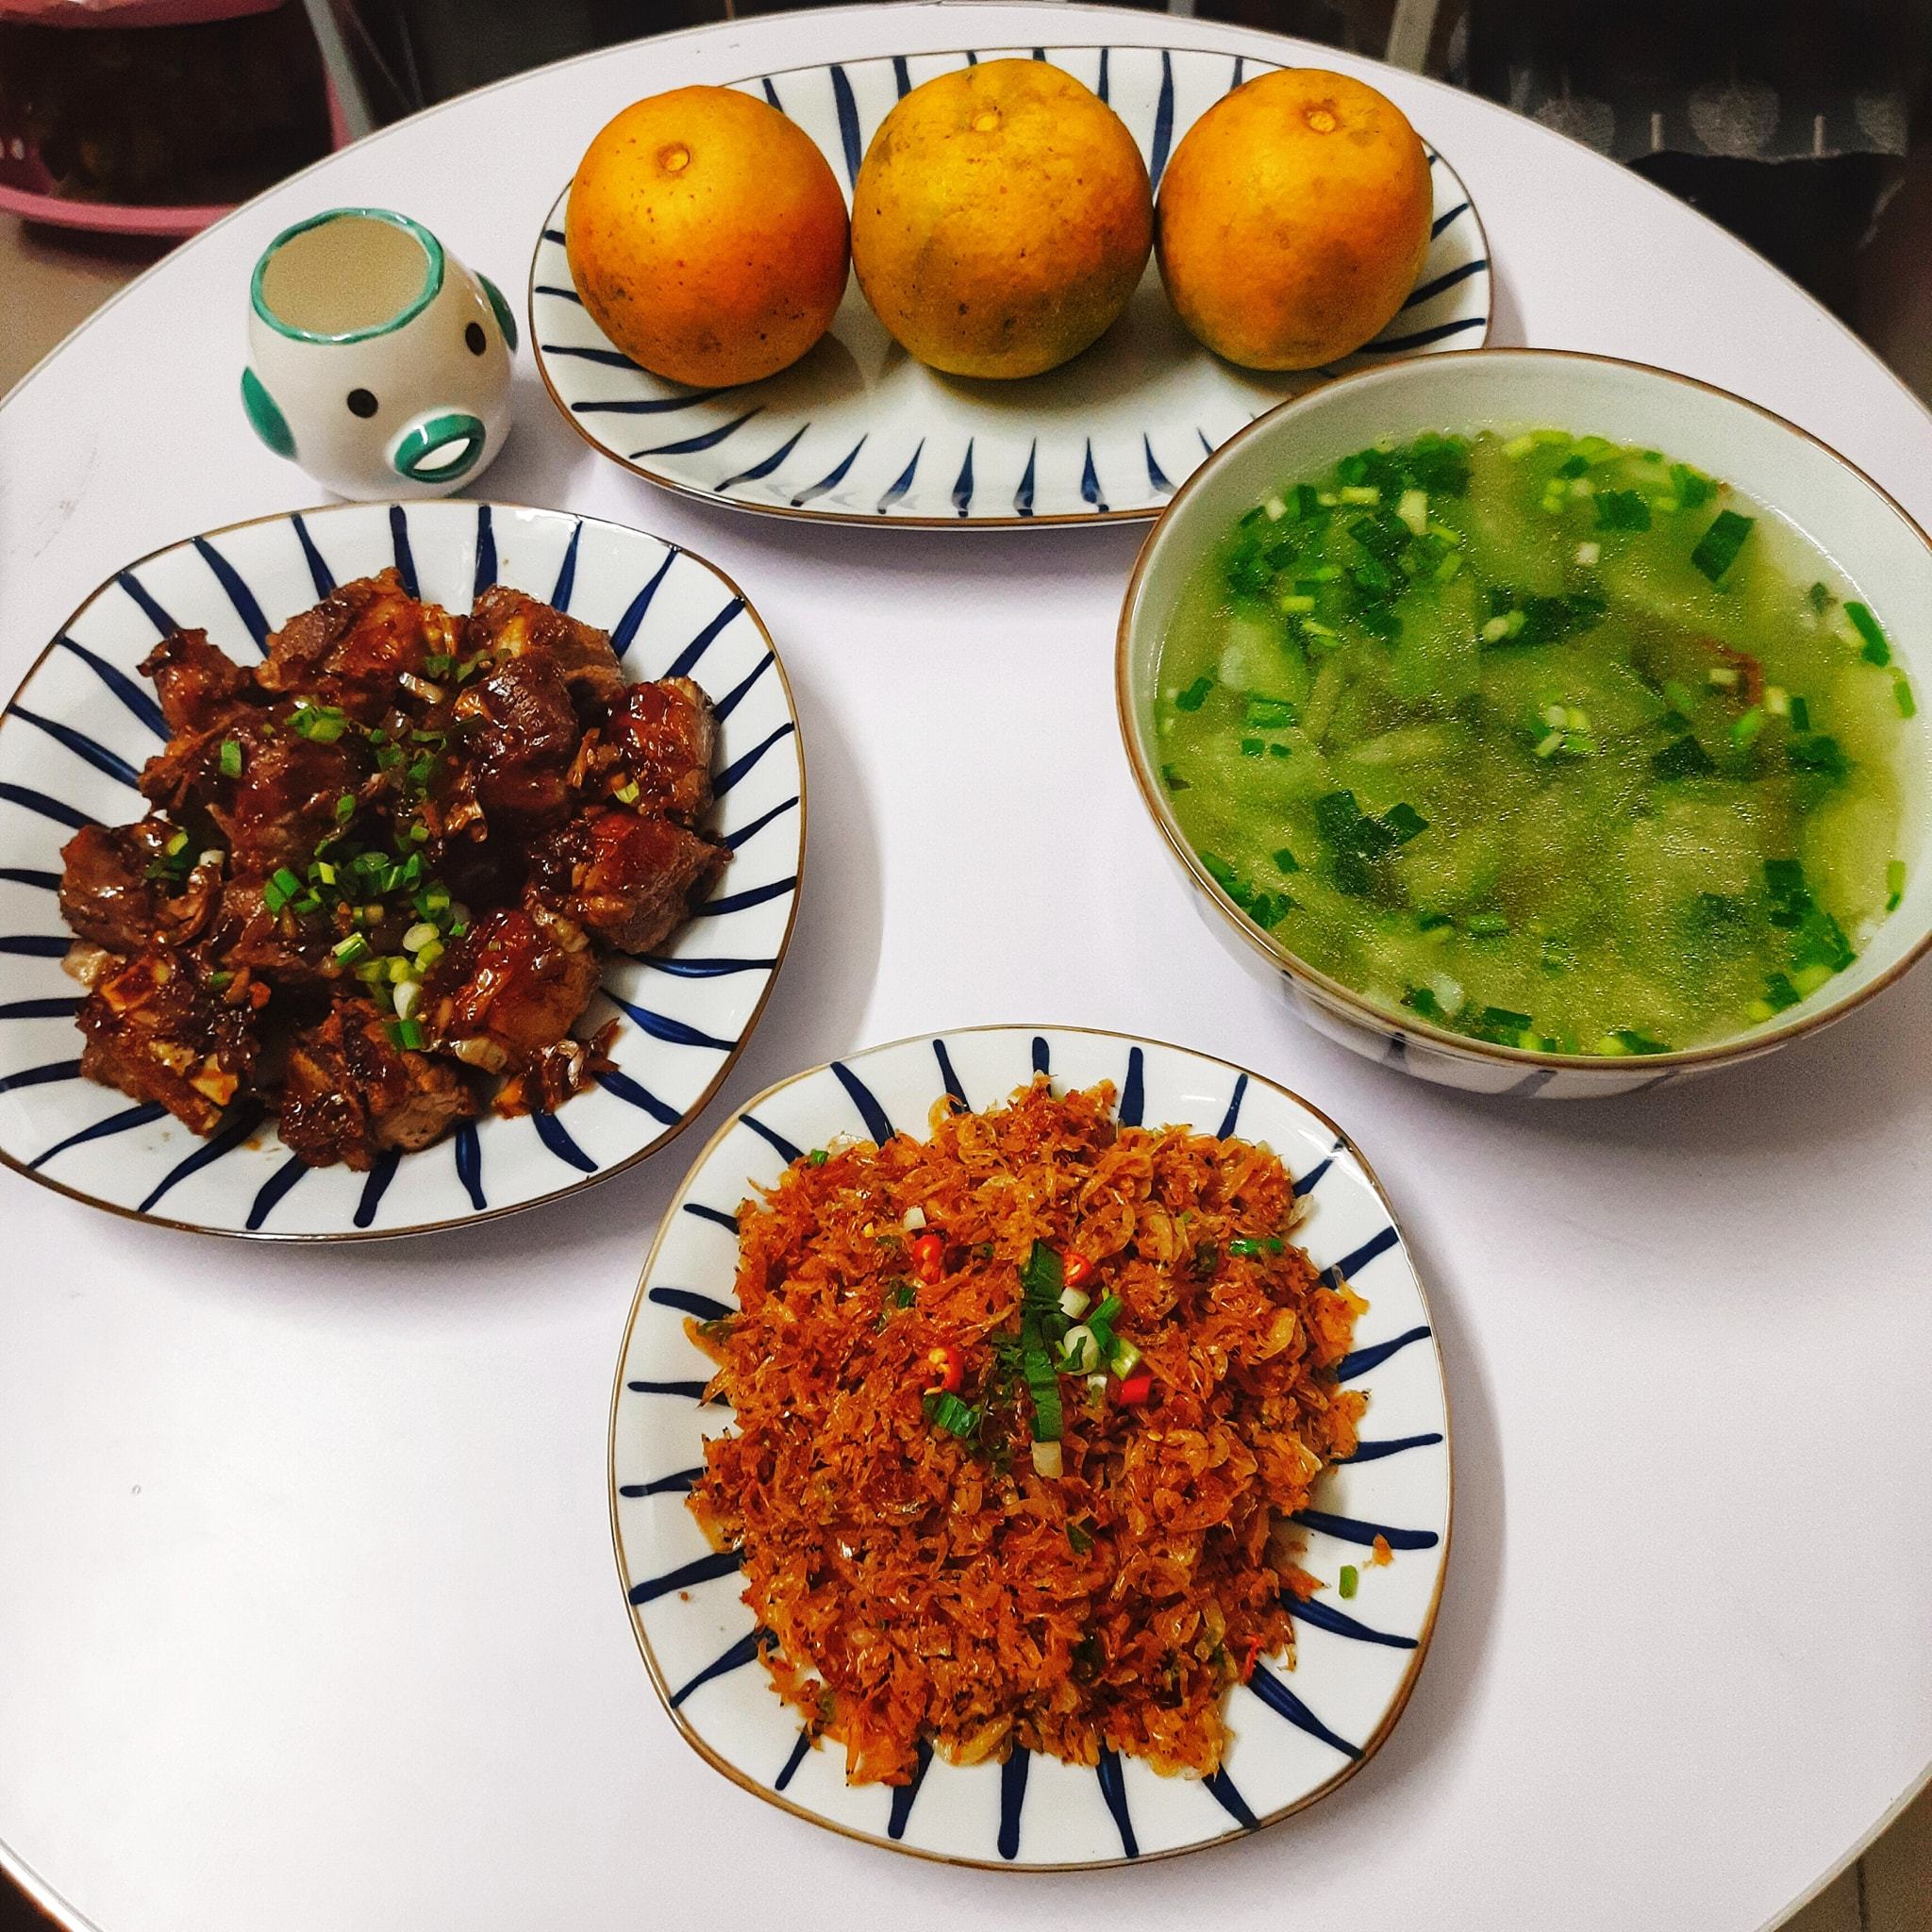 Những thực đơn cơm nhà đơn giản hội tụ hương- sắc - vị của bà mẹ trẻ ở Thanh Hóa